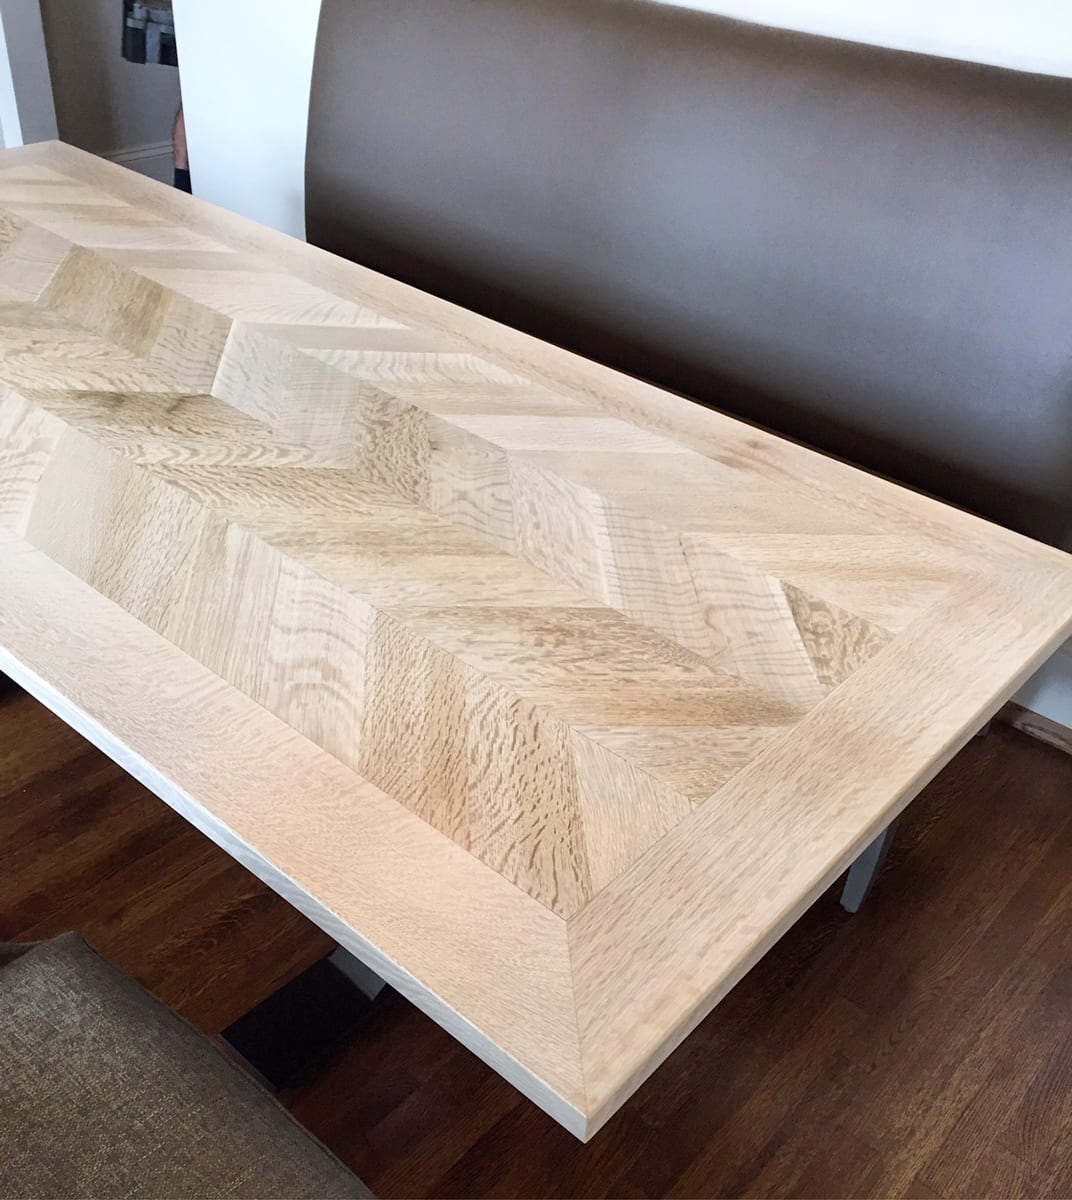 quartersawn white oak herringbone table